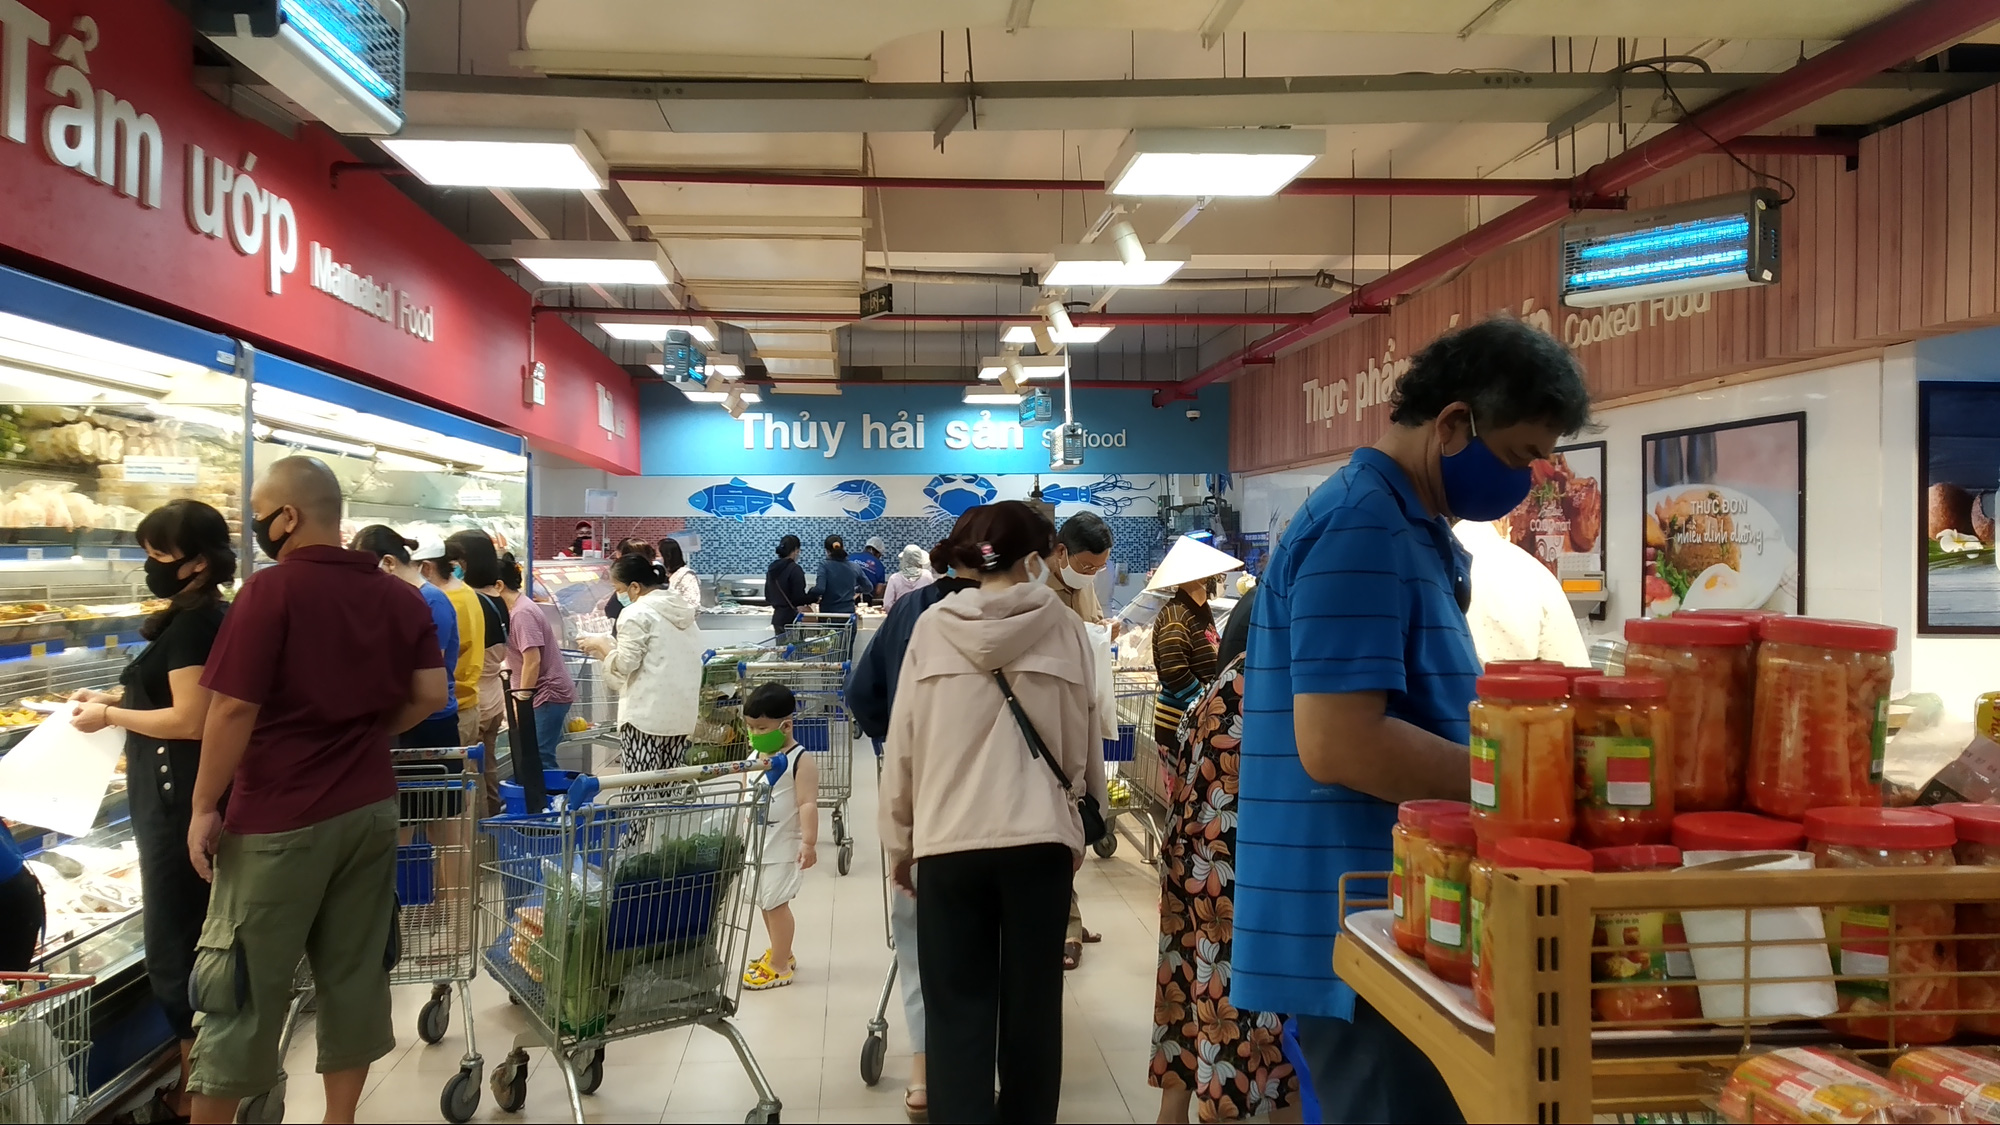 Chợ, siêu thị ở TP HCM đông vui trong 2 ngày nghỉ lễ nhờ giảm giá - Ảnh 3.